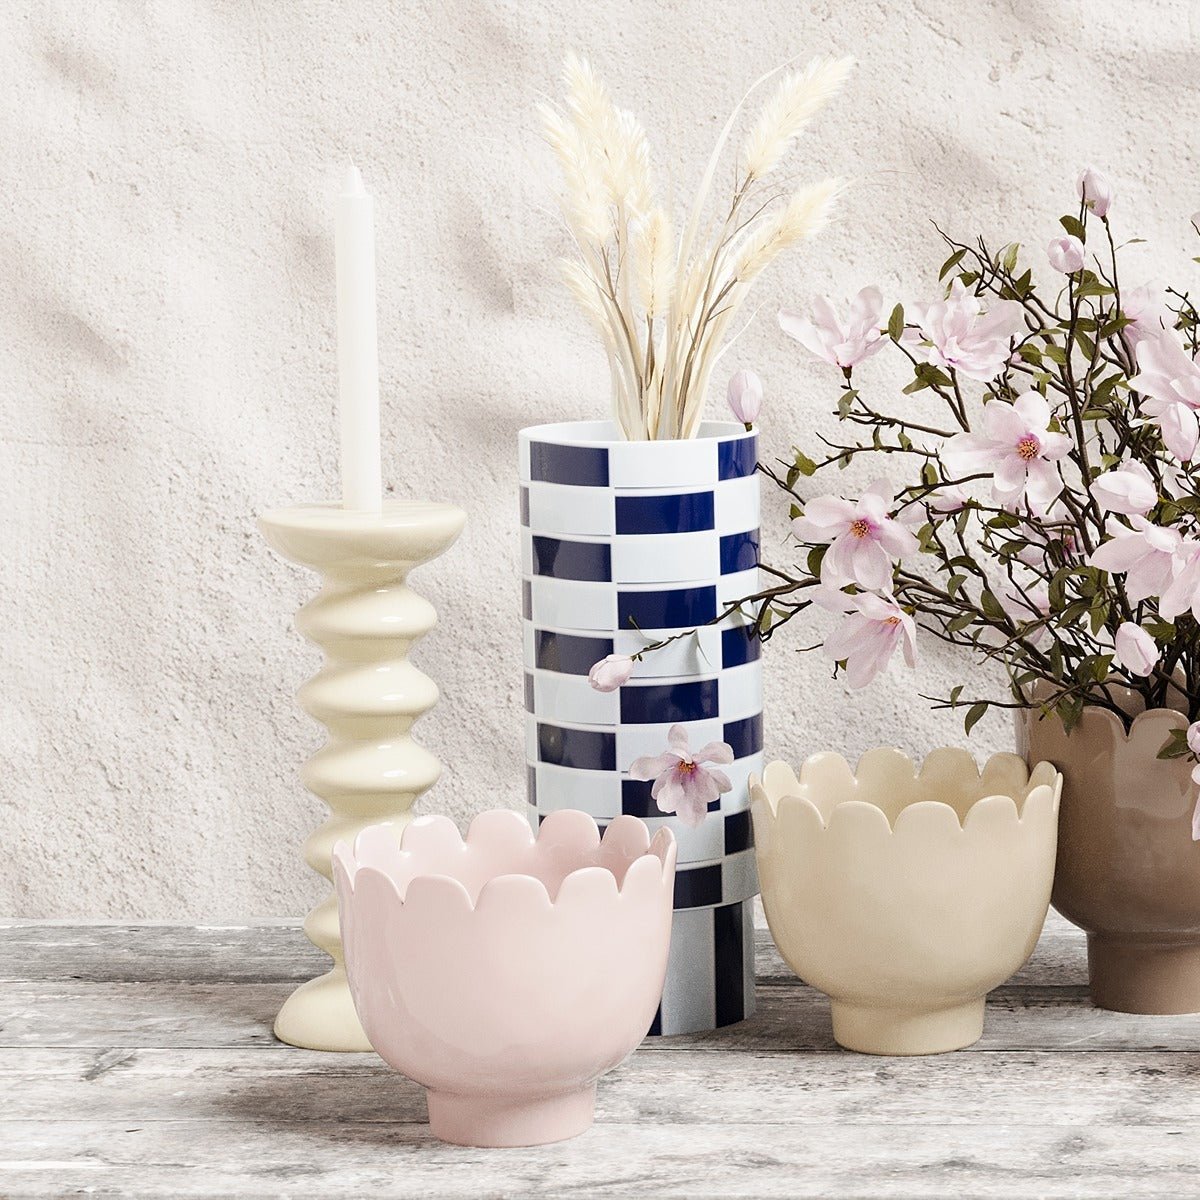 Le vase céramique marine et blanc et son motif géométrique à damier permet toutes les associations, de style bohème ou moderne - Potiron Paris, collection déco à motifs géométriques graphiques